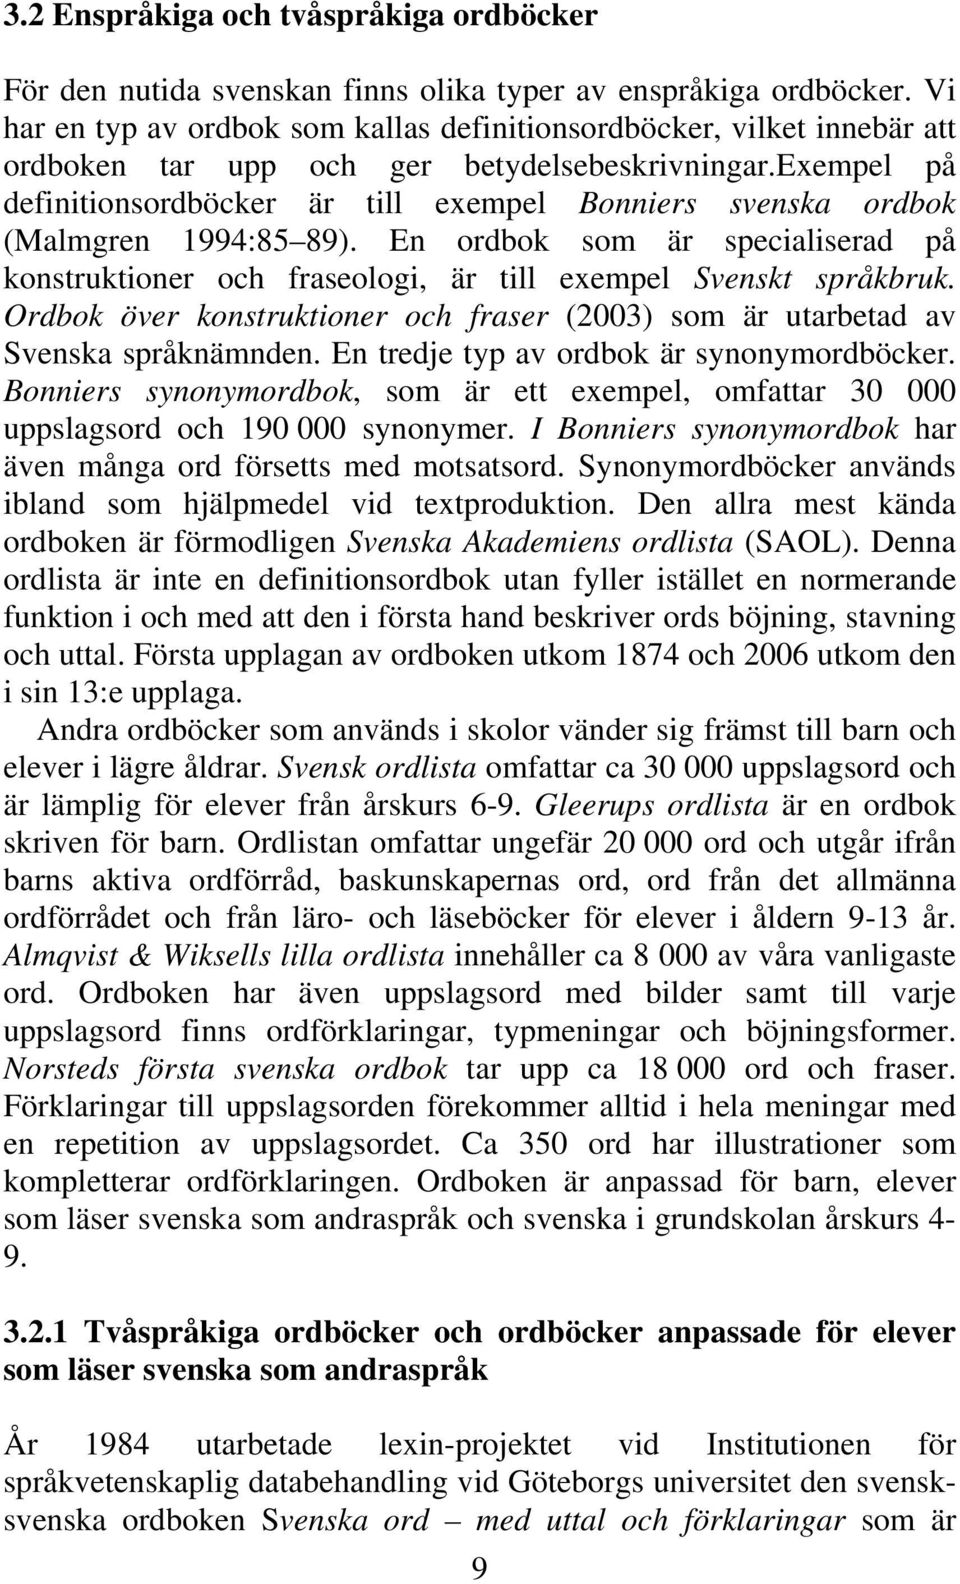 exempel på definitionsordböcker är till exempel Bonniers svenska ordbok (Malmgren 1994:85 89). En ordbok som är specialiserad på konstruktioner och fraseologi, är till exempel Svenskt språkbruk.